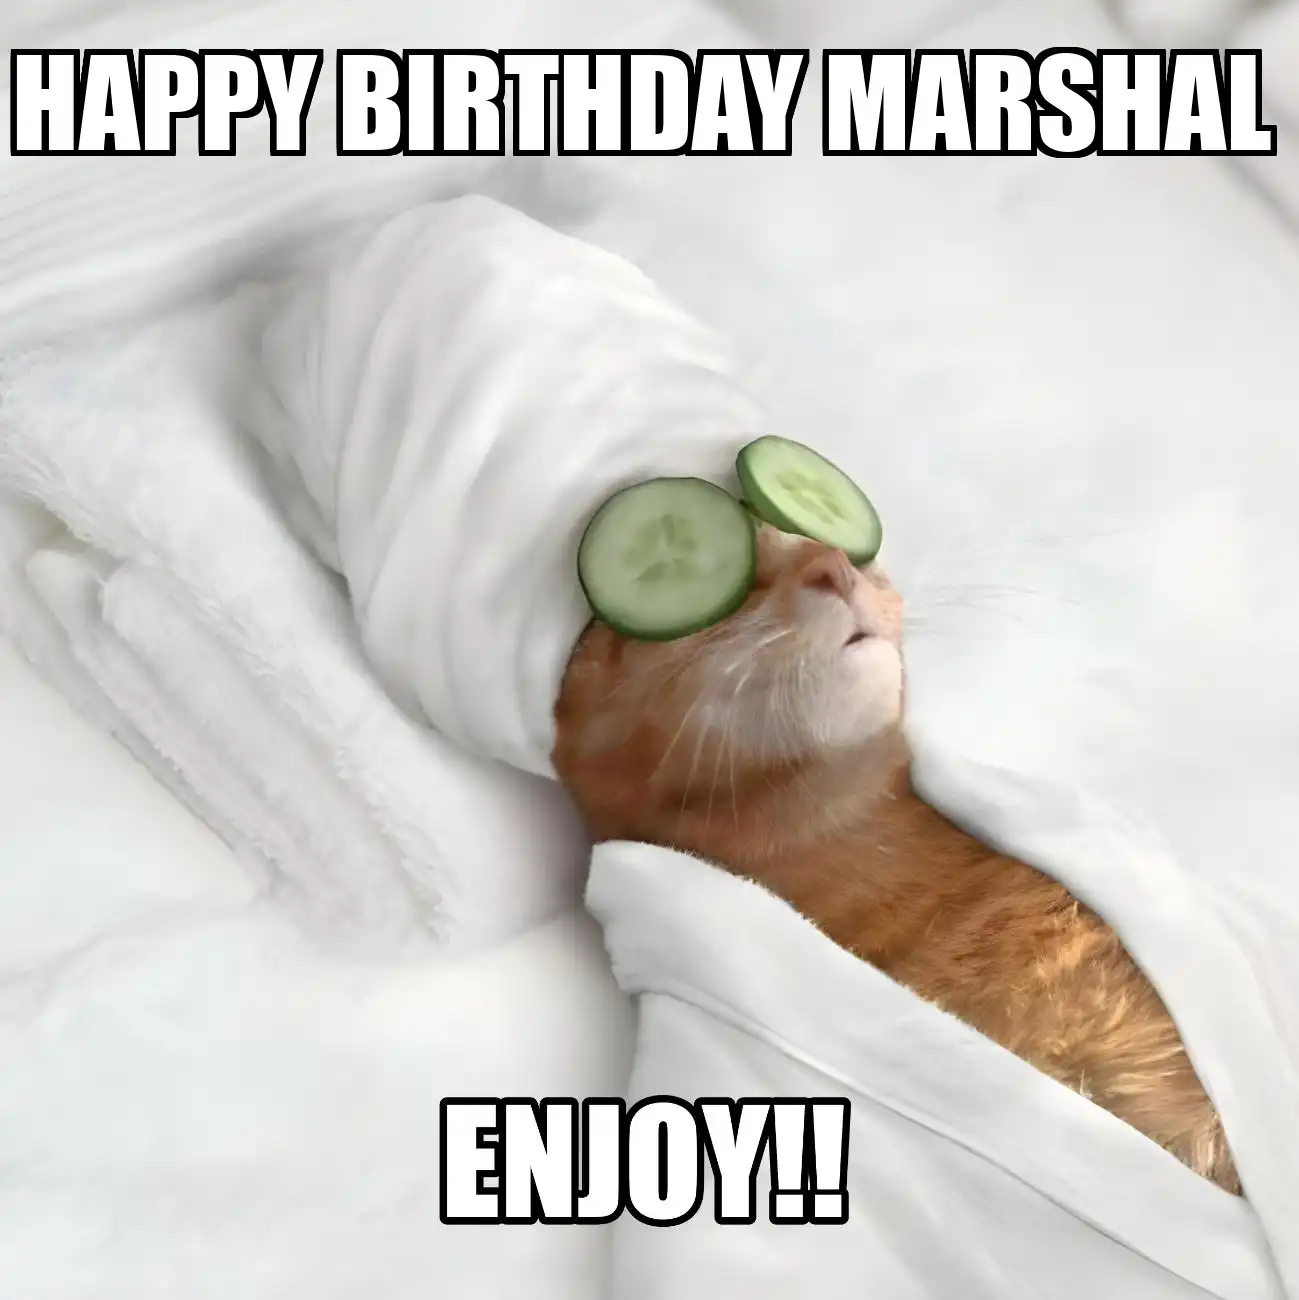 Happy Birthday Marshal Enjoy Cat Meme